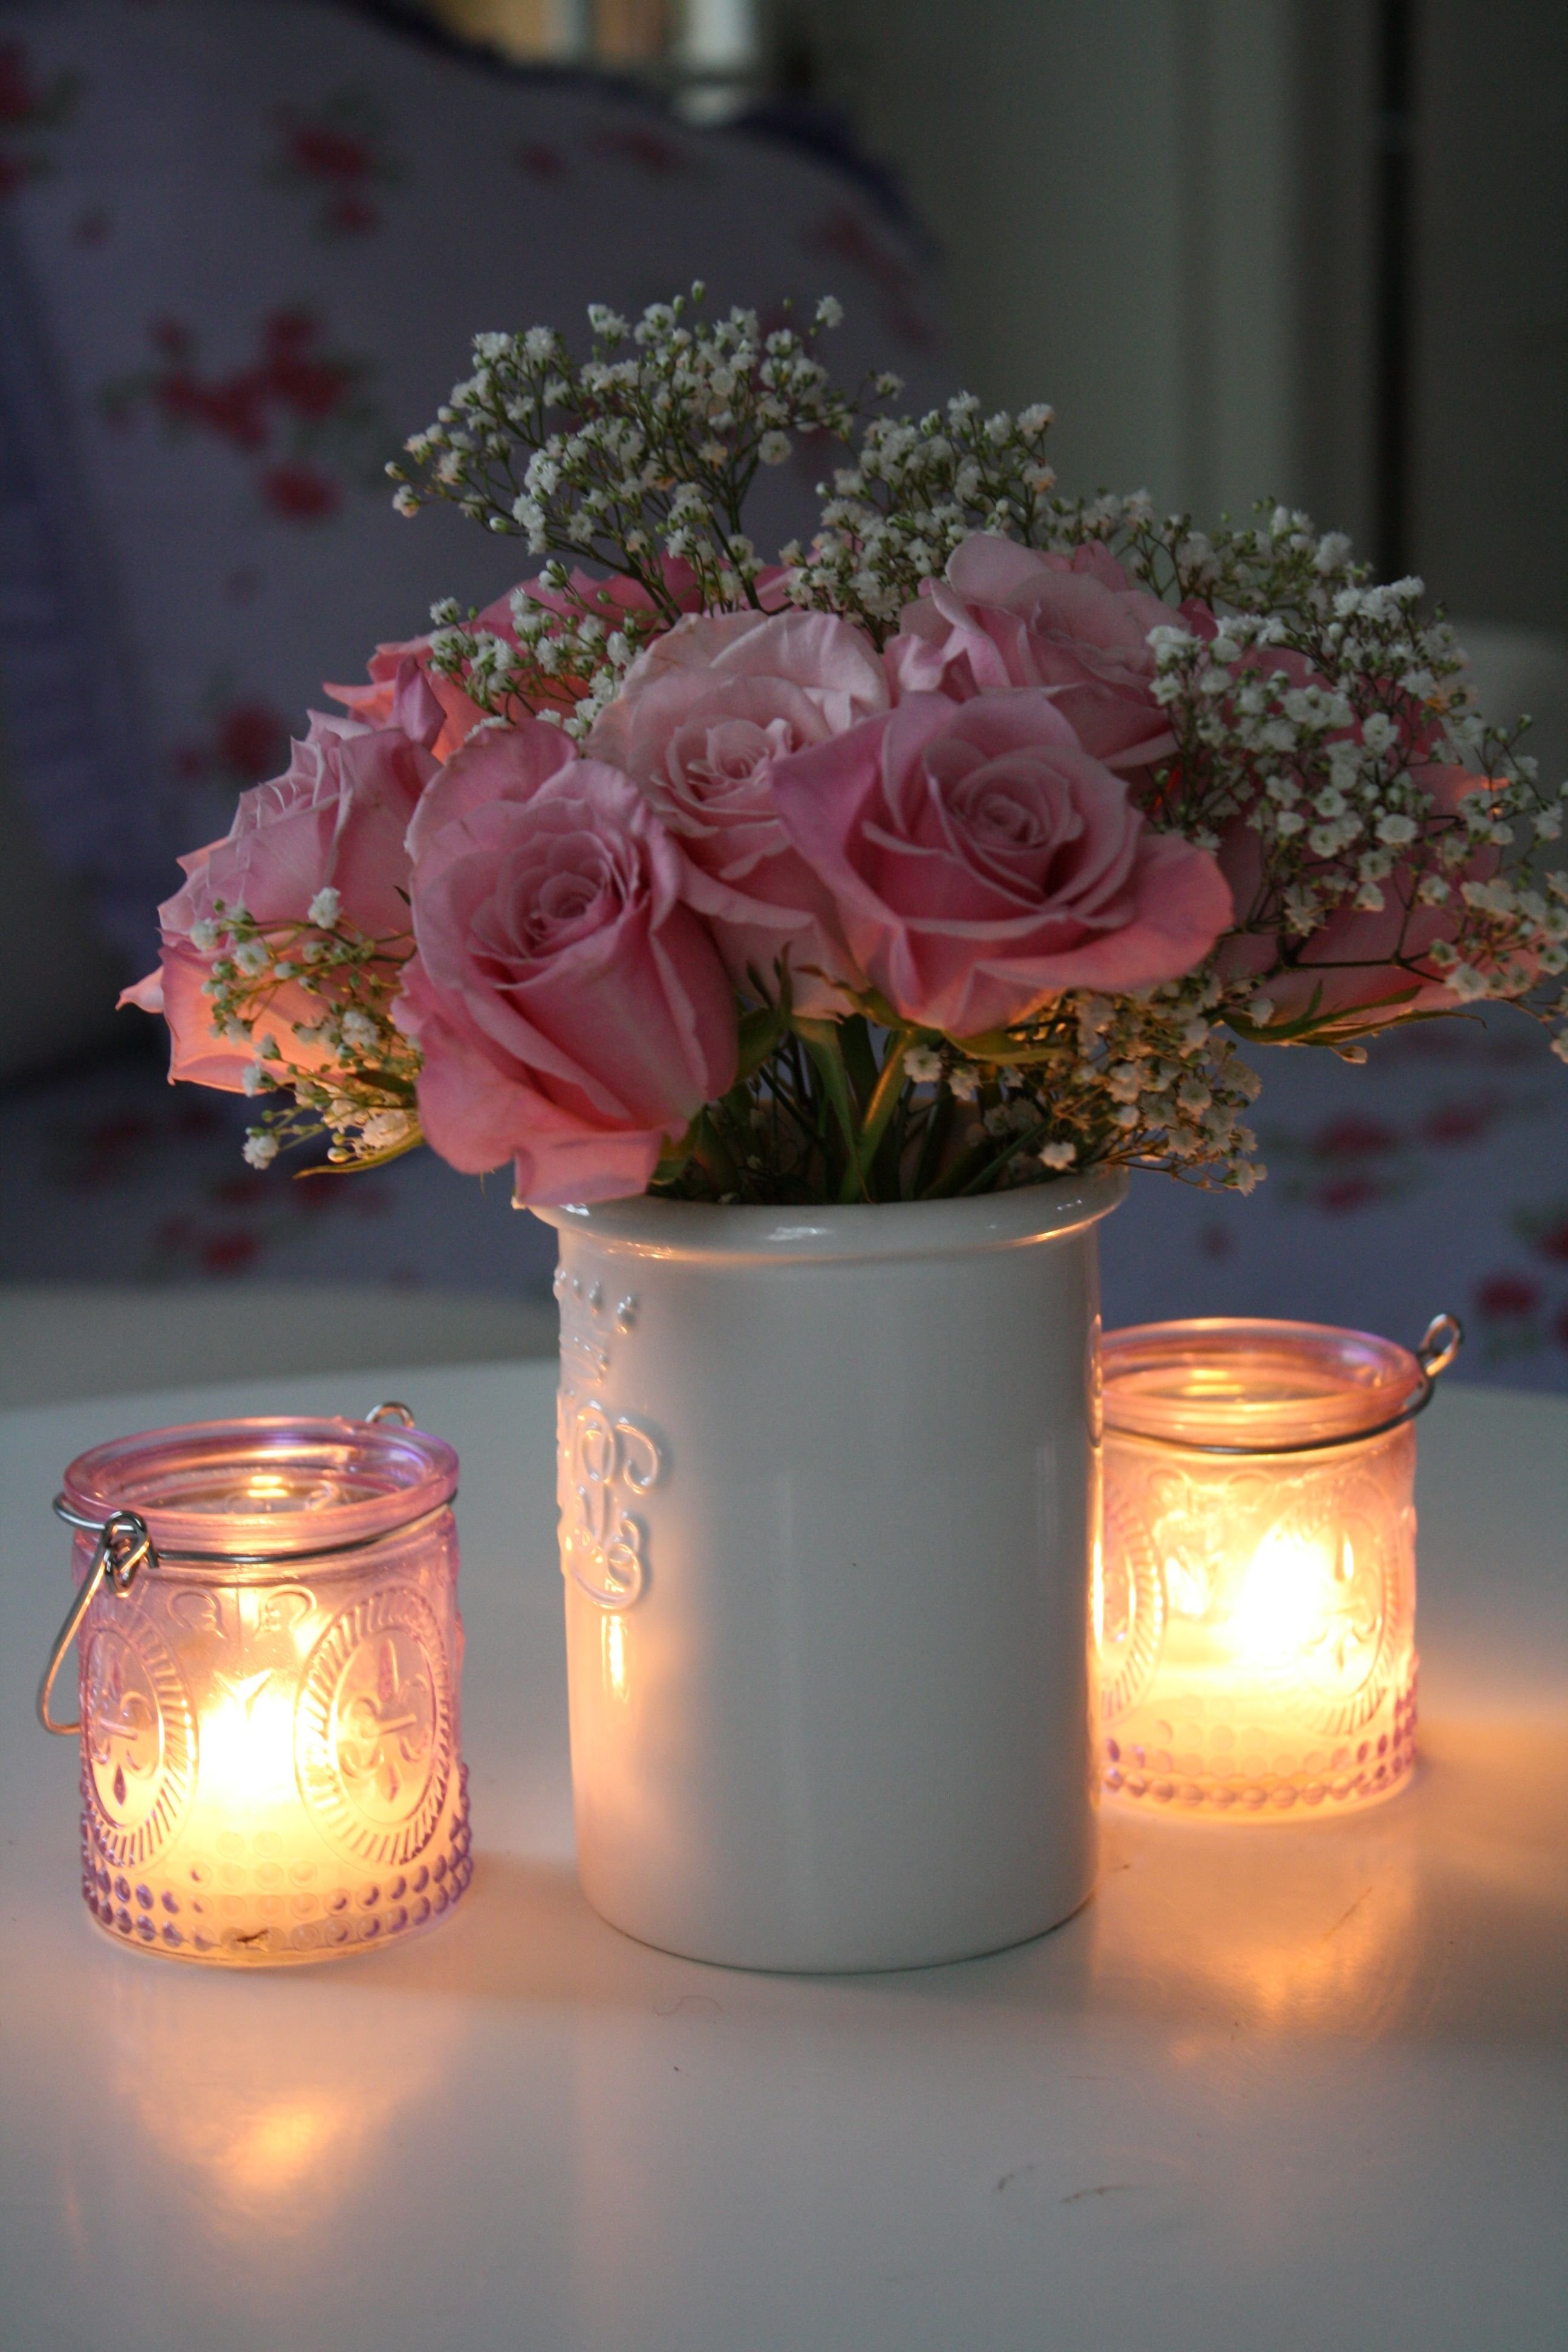 Картинка красивая с добрым вечером нежная. Романтические цветы. Красивые цветы в вазе. Цветы вечер. Вечер красиво.